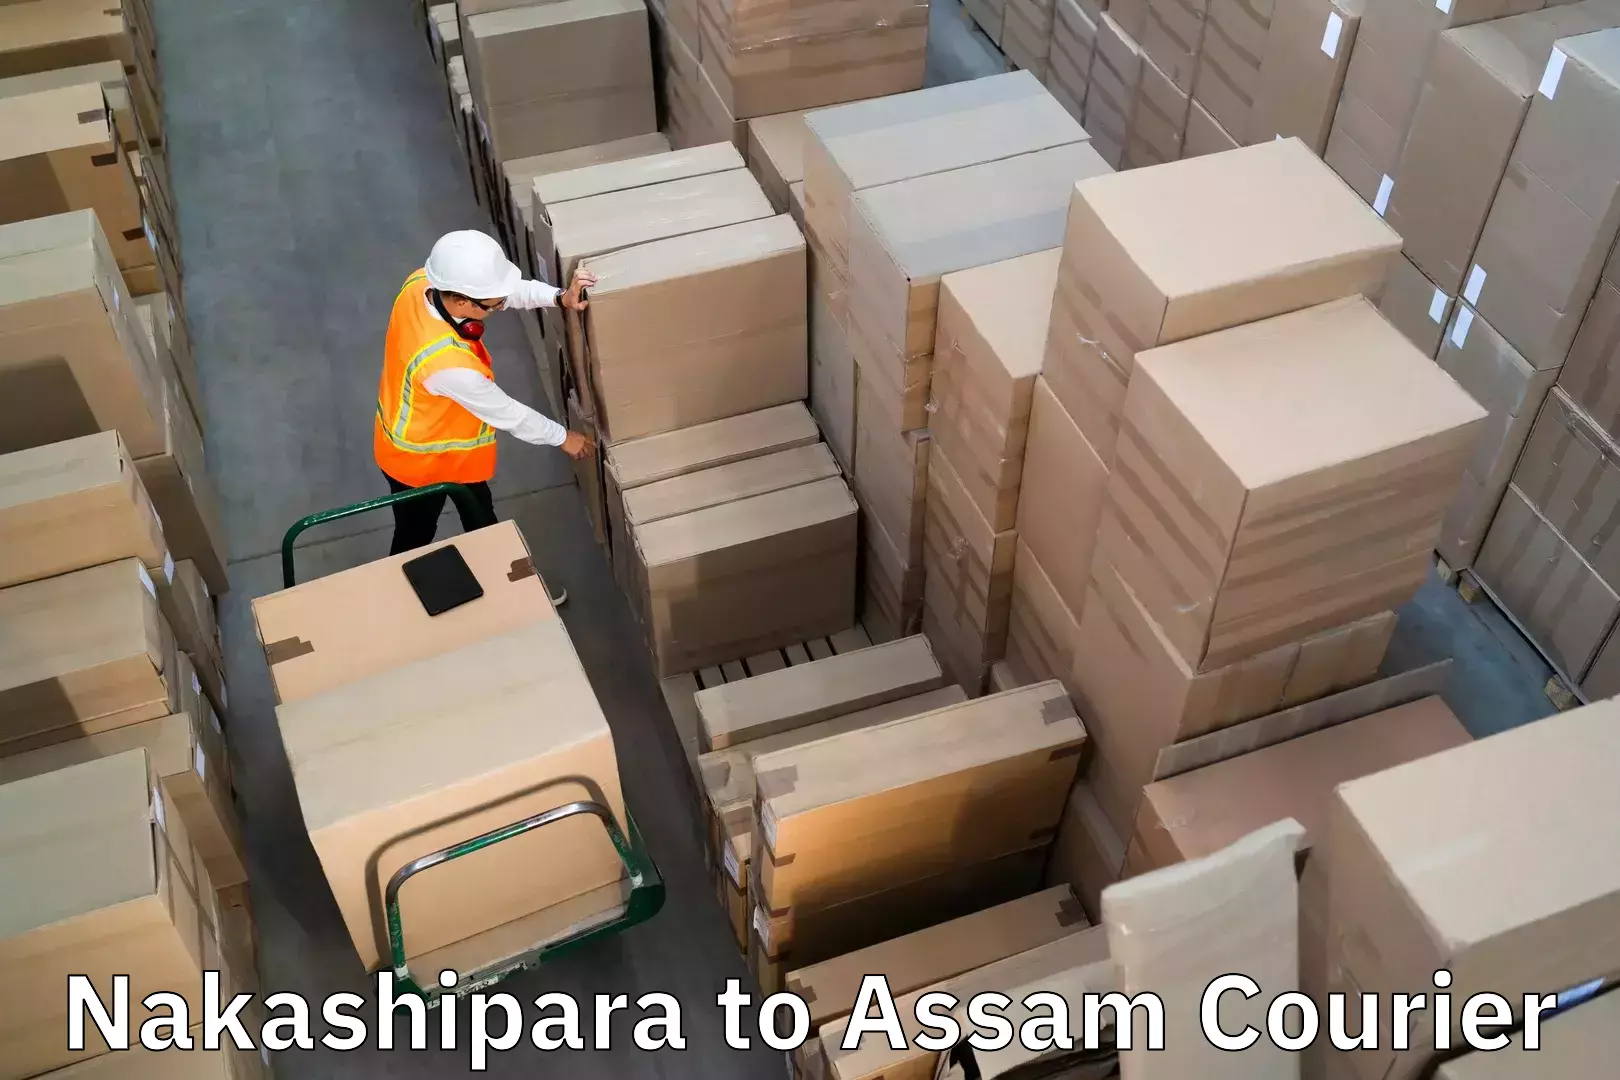 Hassle-free luggage shipping Nakashipara to Tezpur University